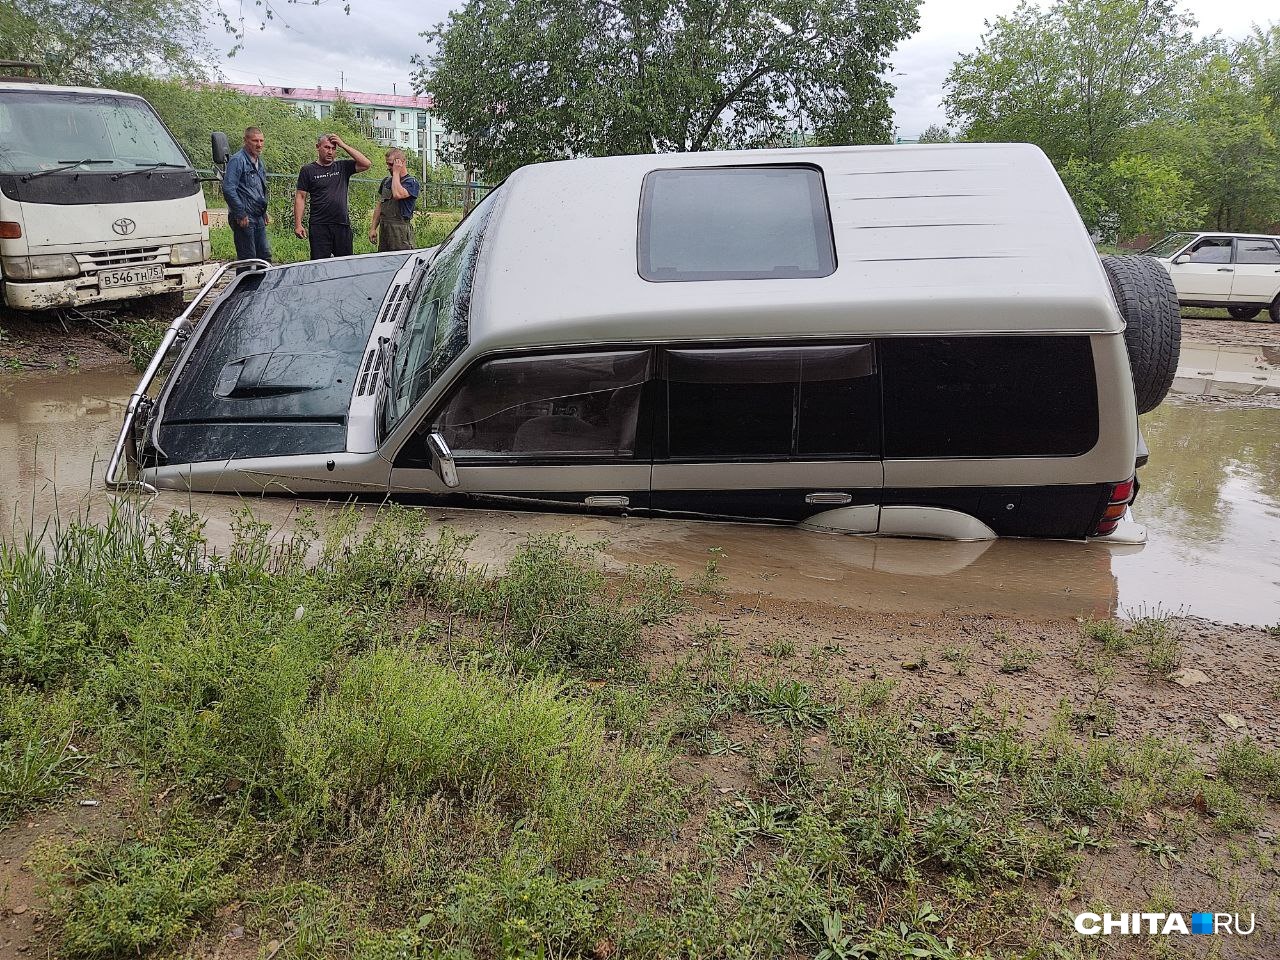 Машина утонула в луже 16 июля после дождя в Чите